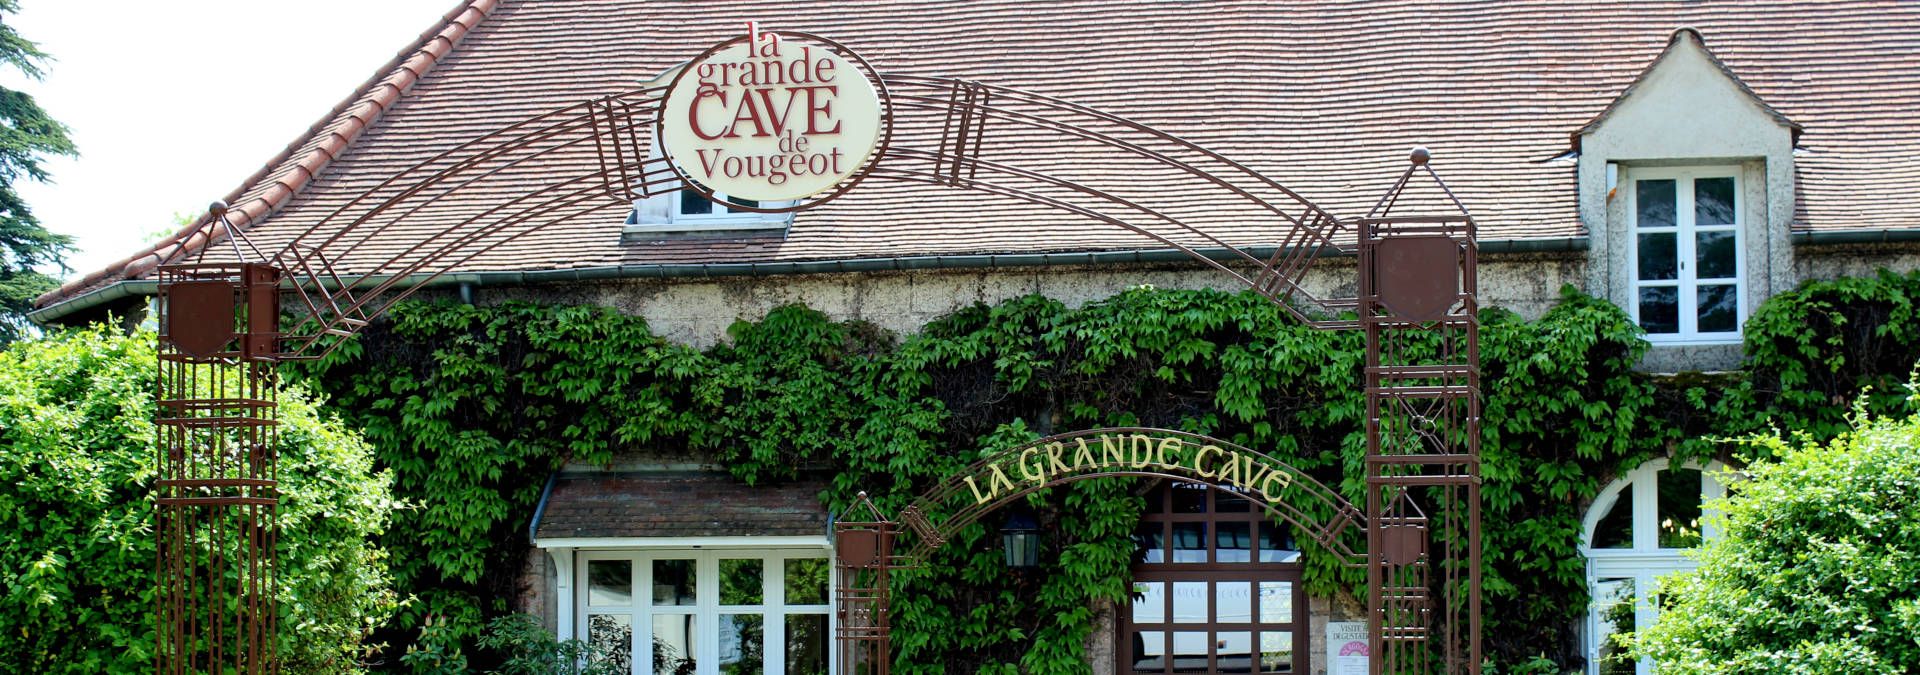 La Grande Cave de Vougeot - Rue des Vignerons